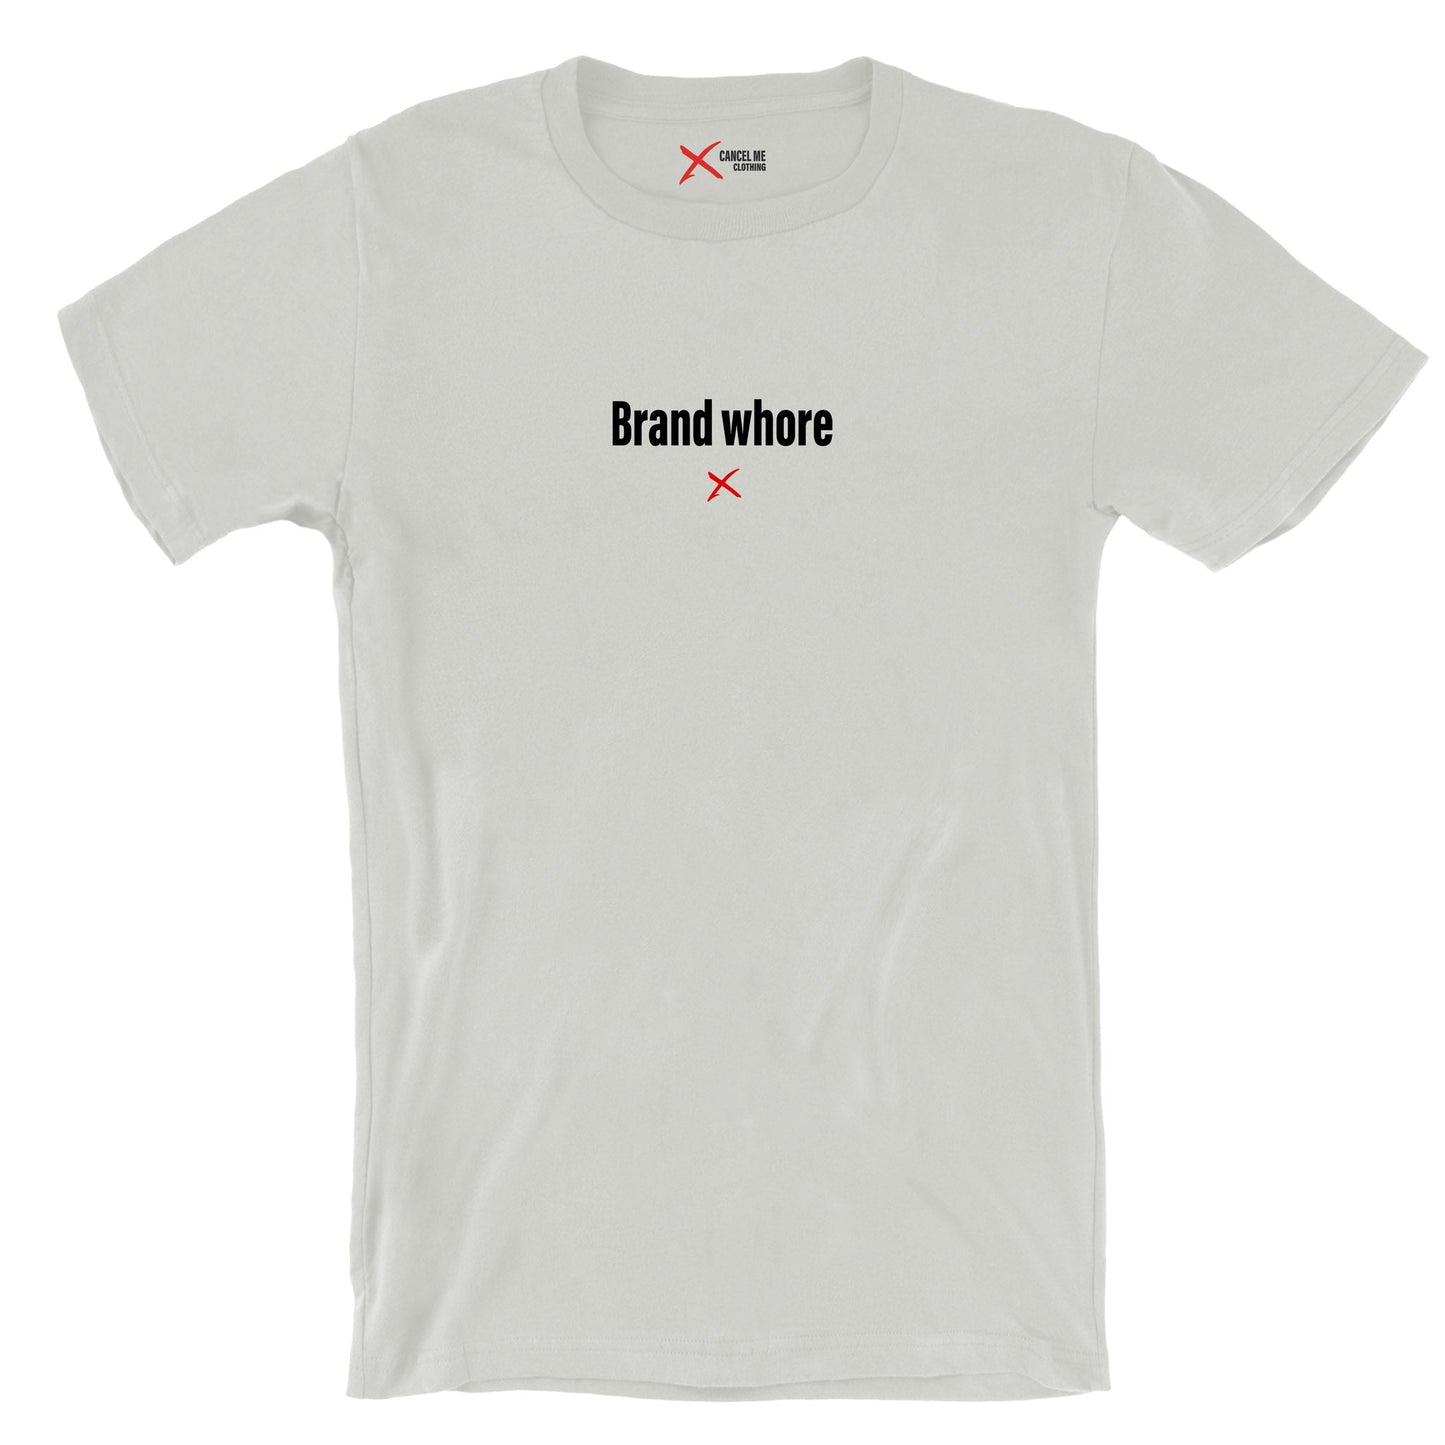 Brand whore - Shirt